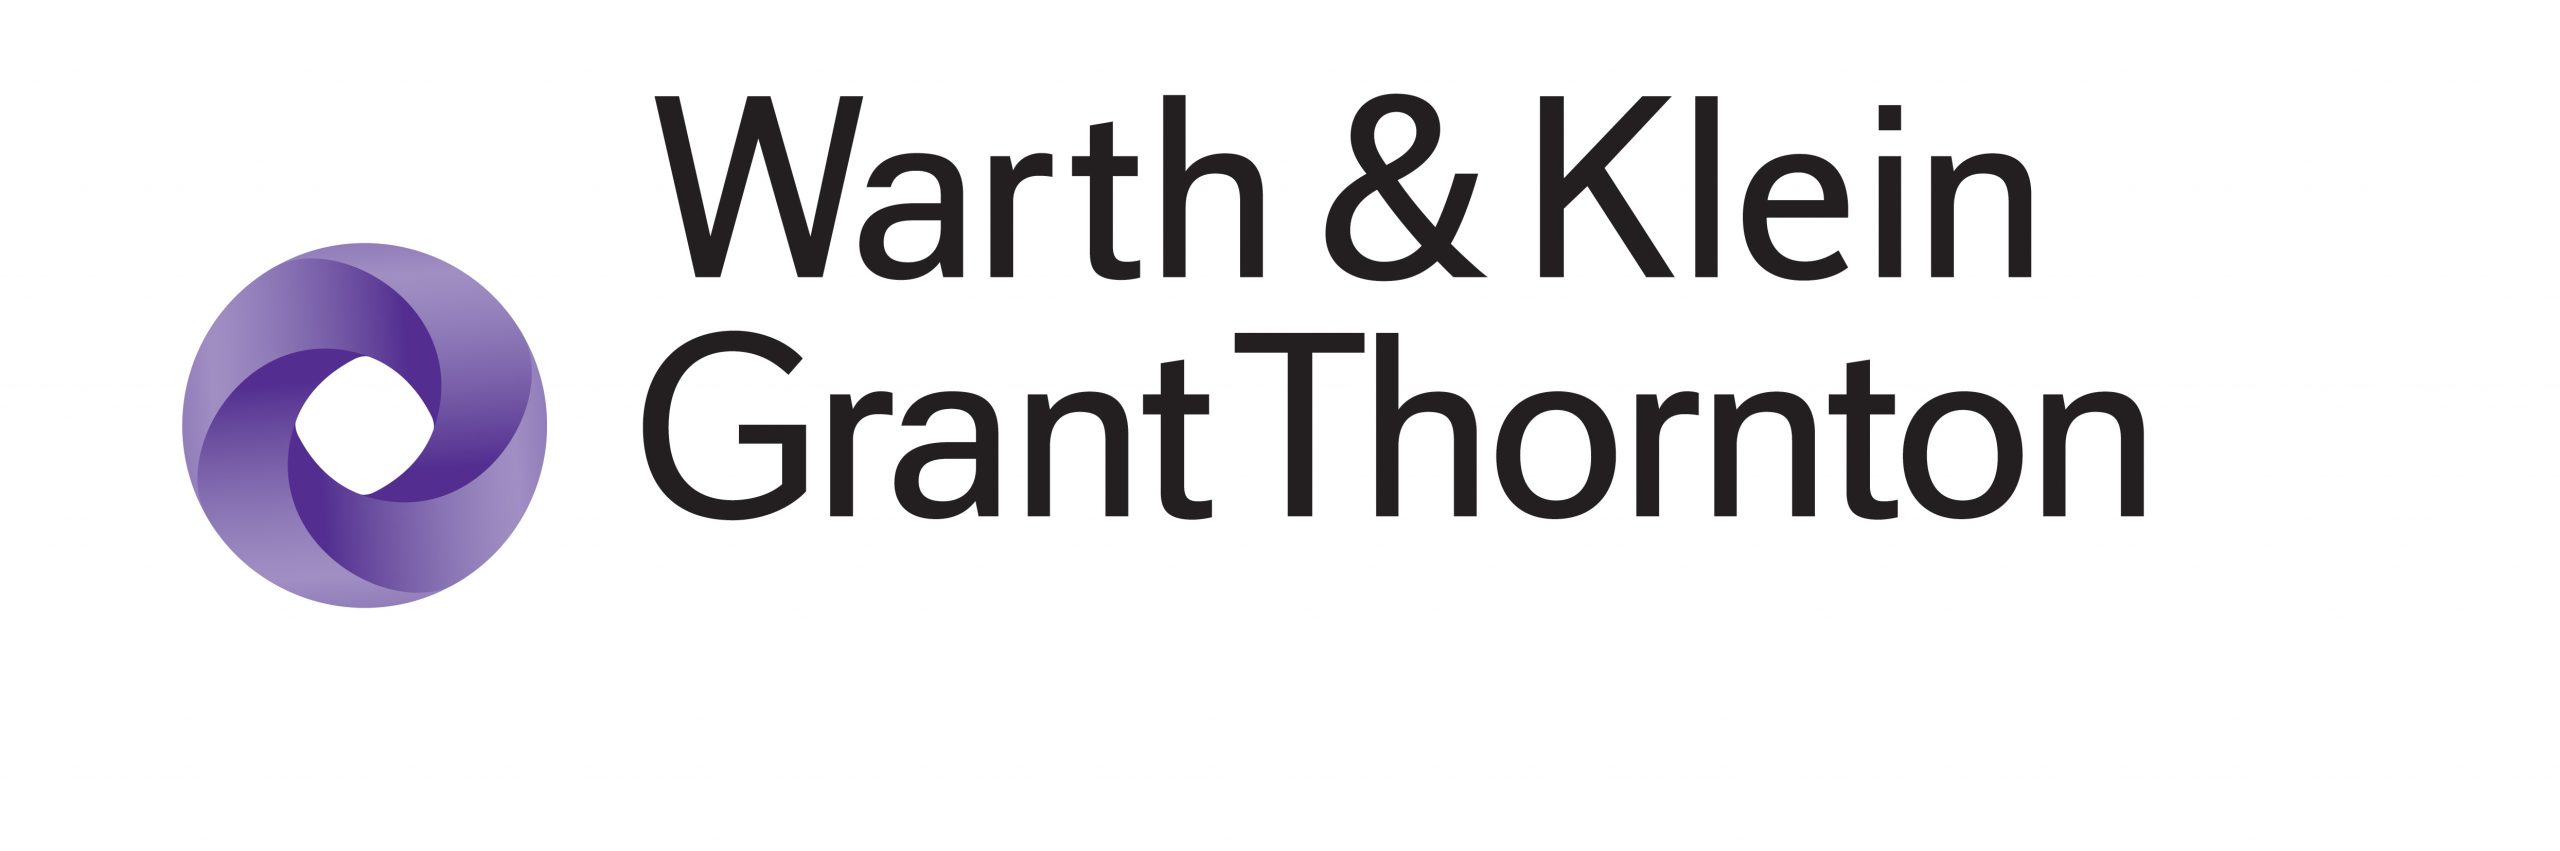 Warth & Klein Grant Thornton 